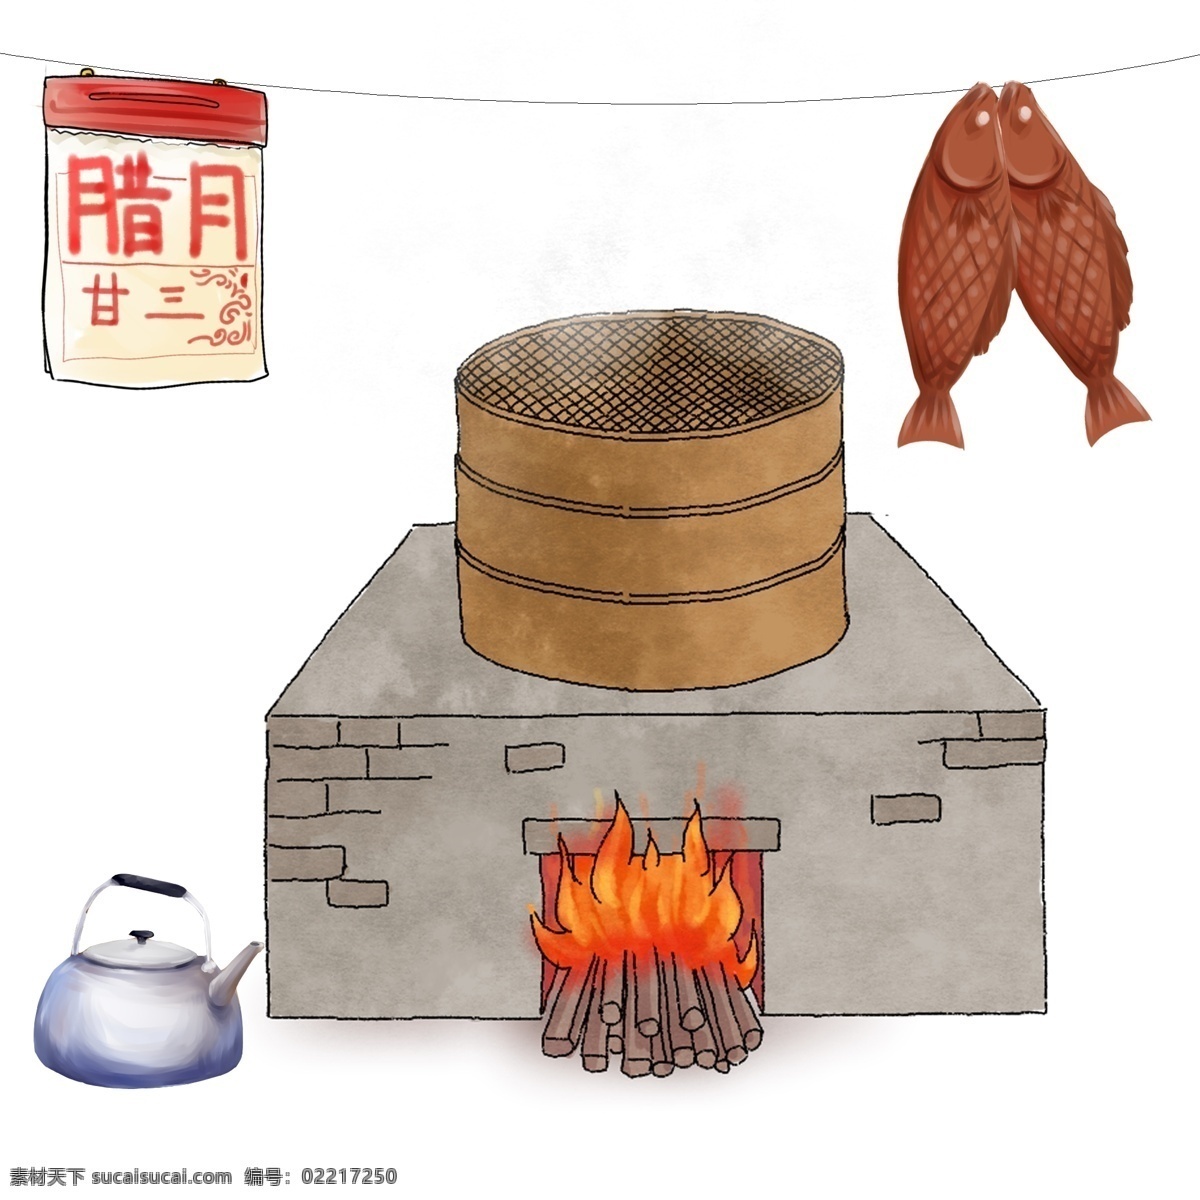 农村 的卡 通 厨房 建筑 做饭的大锅 烧火的大锅 手绘的大锅 燃烧的木柴 农村的日历 咸鱼干 正在做饭 手绘的灶台